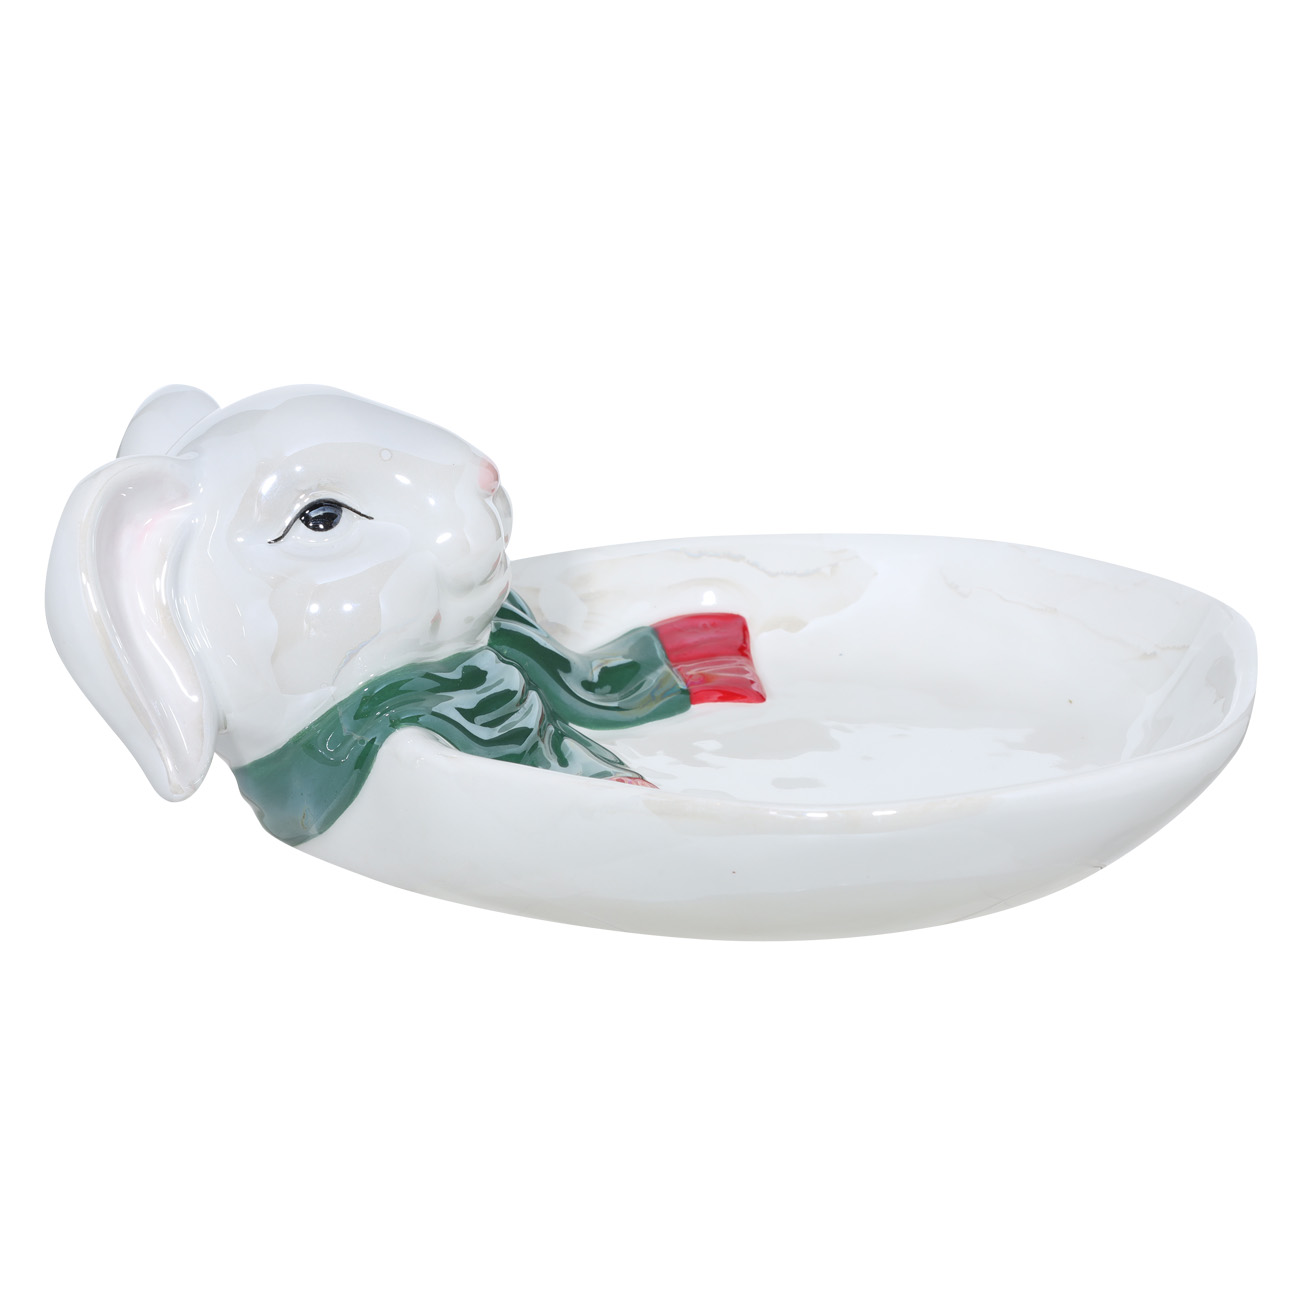 Блюдо, 22 см, керамика, белое, перламутр, Кролик с зеленым шарфом, Christmas glaze - фото 1